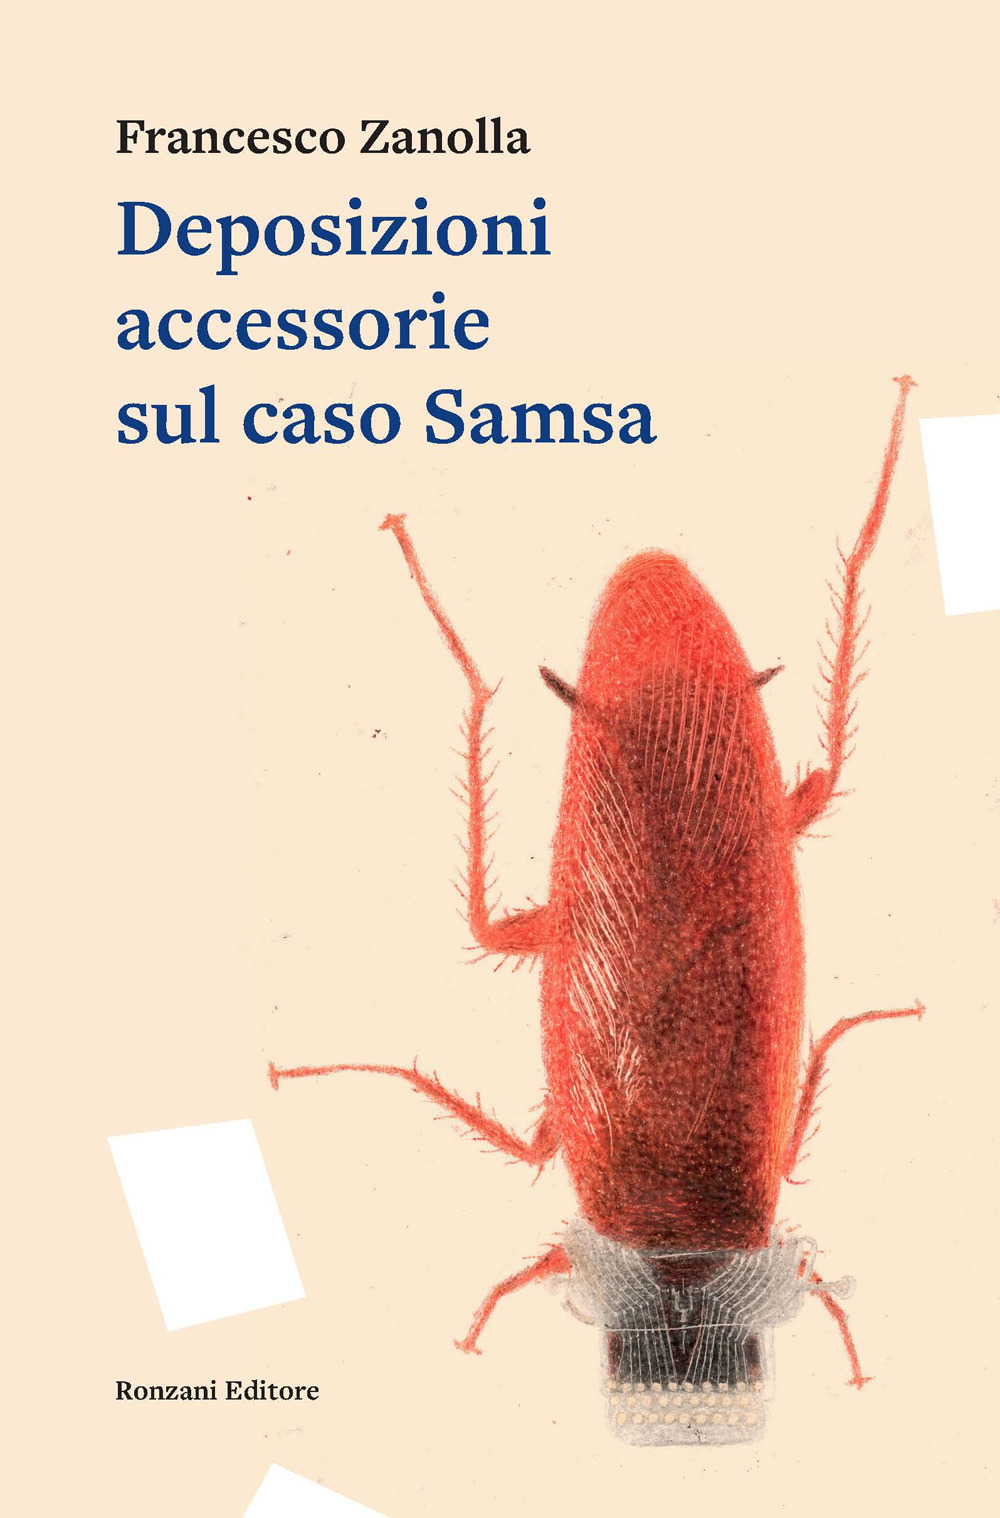 Deposizioni accessorie sul caso Samsa